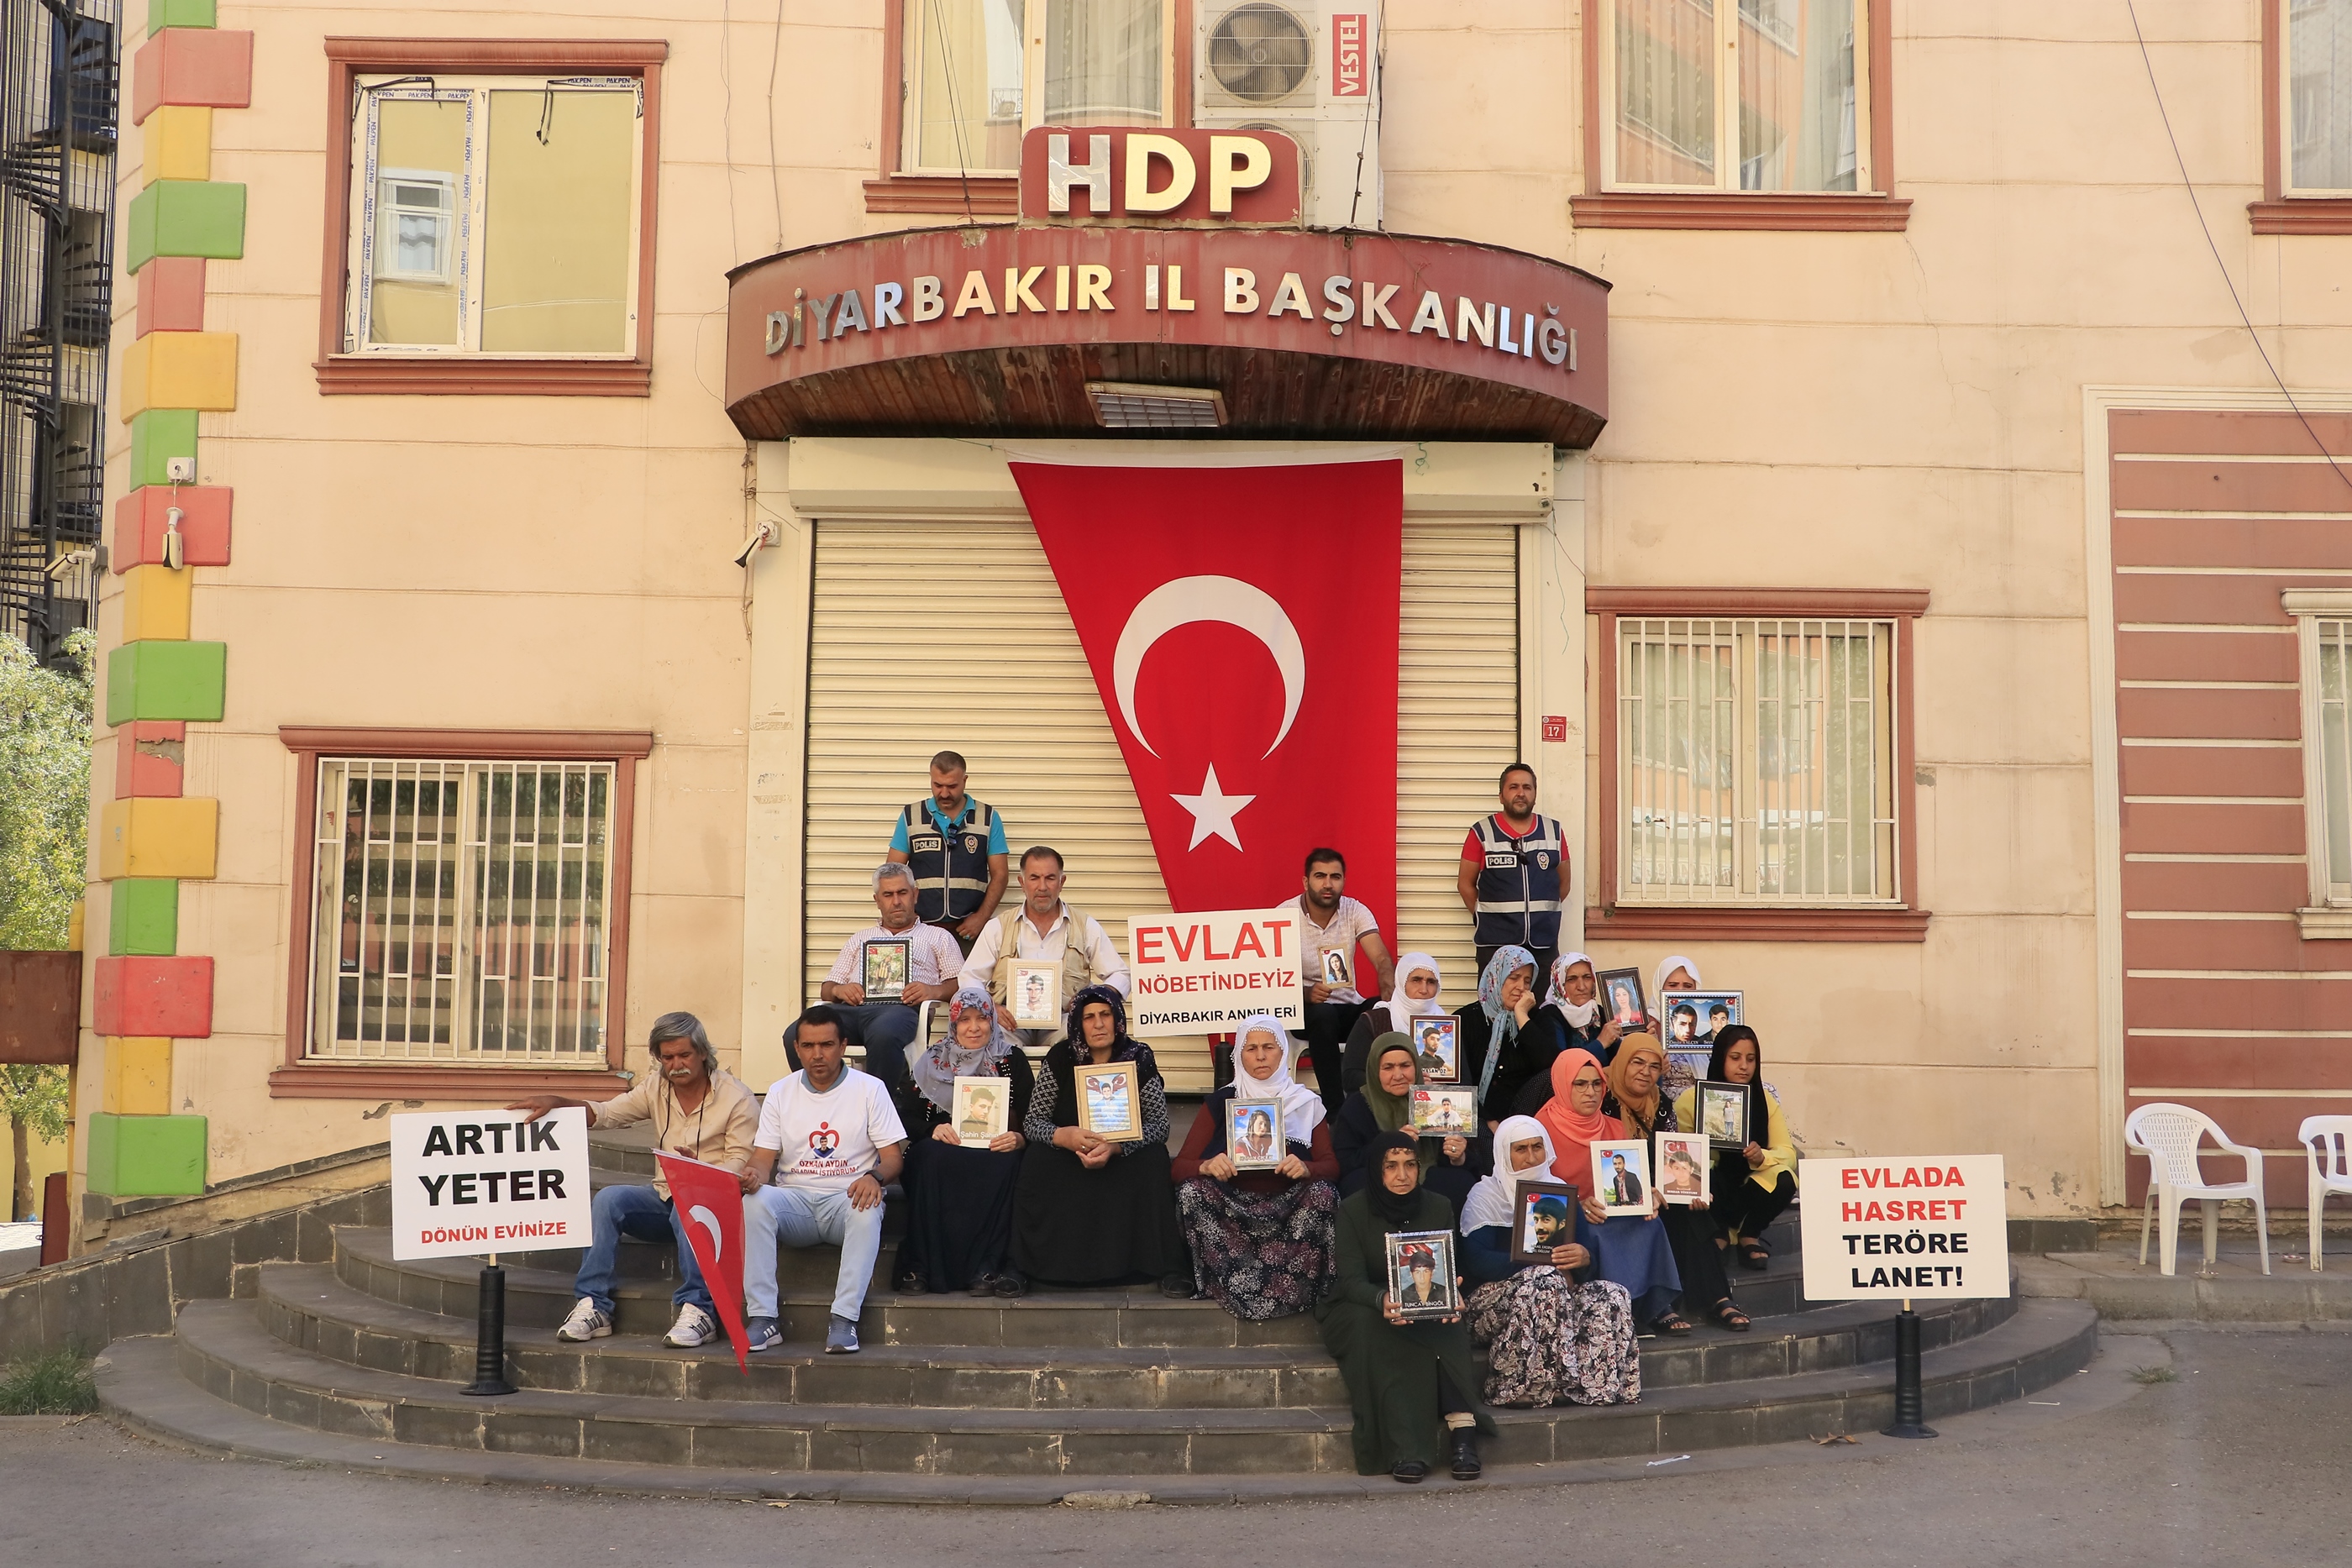 Evlat nöbetindeki baba: HDP'nin arka kapısı Kandil'e açılıyor